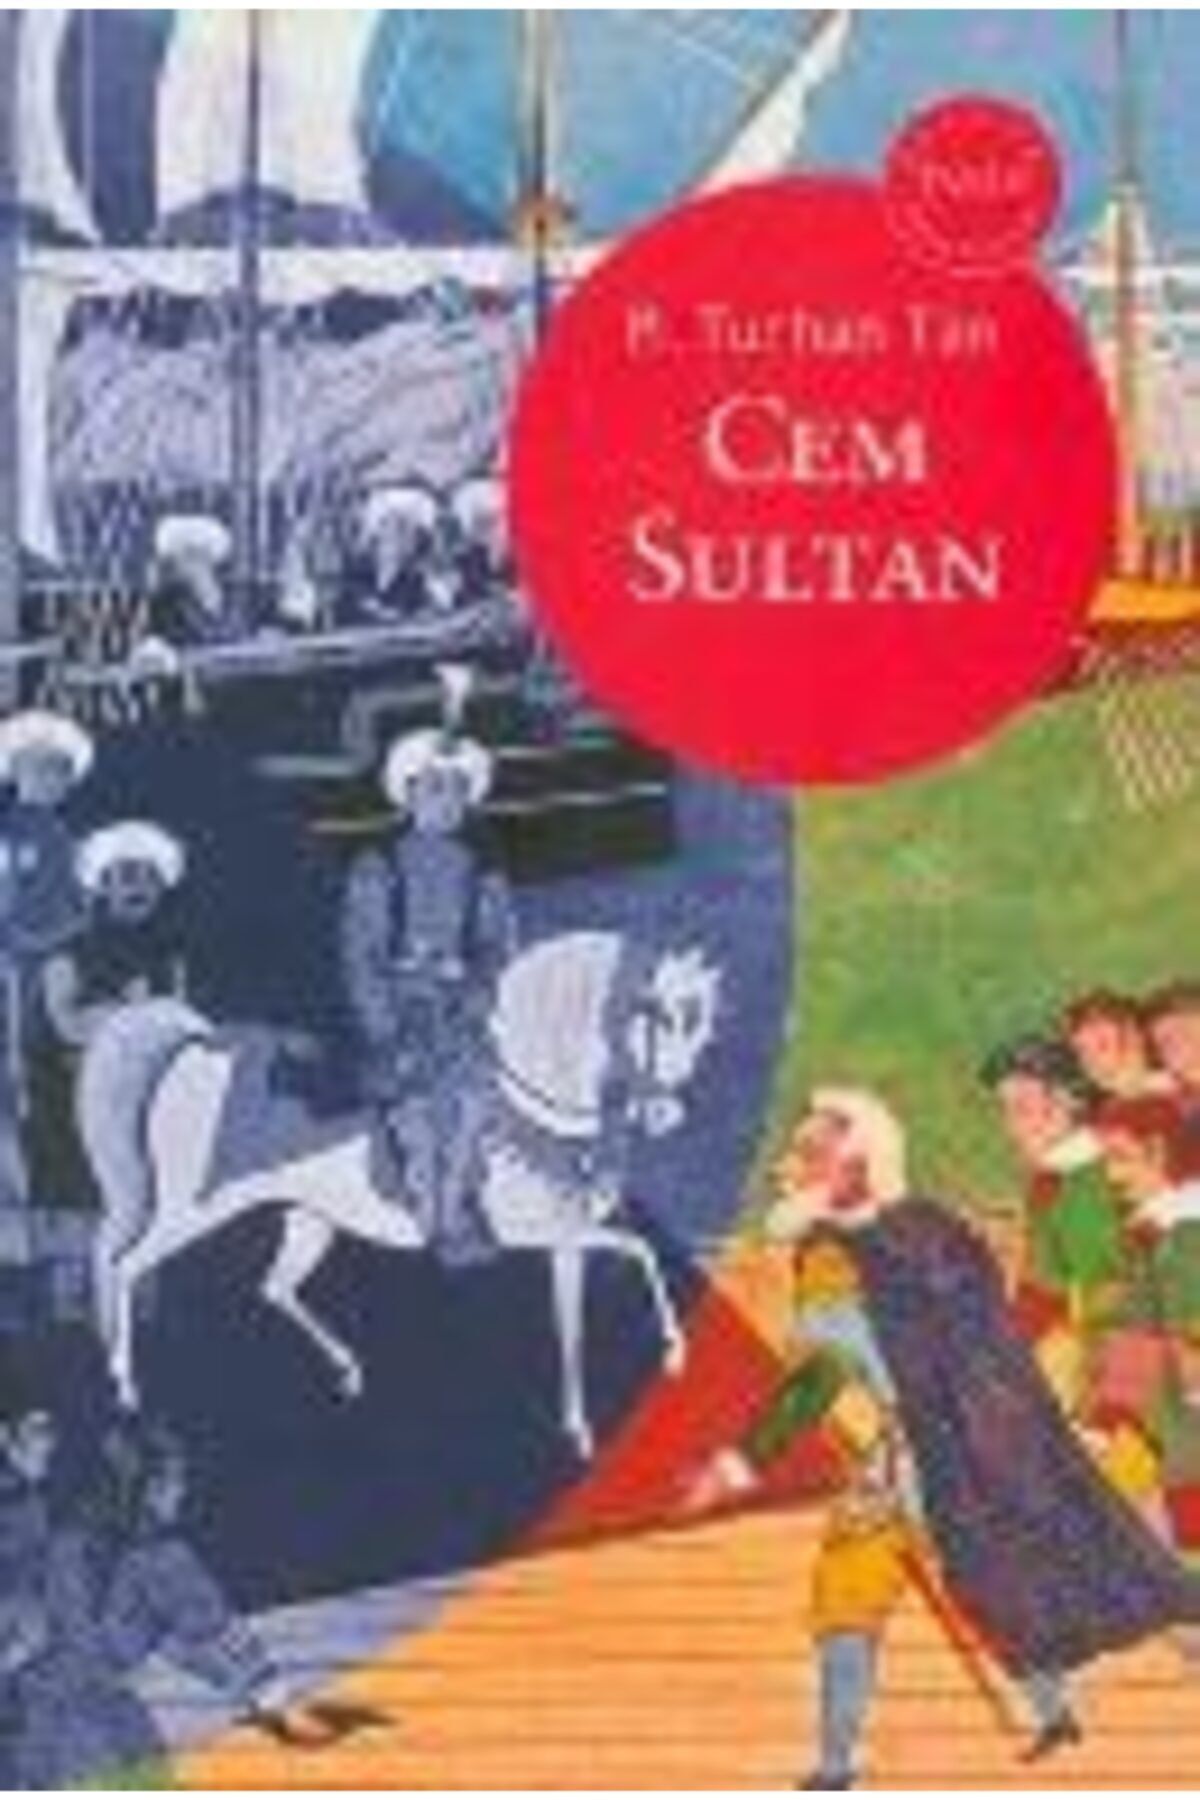 Oğlak Yayıncılık Cem Sultan